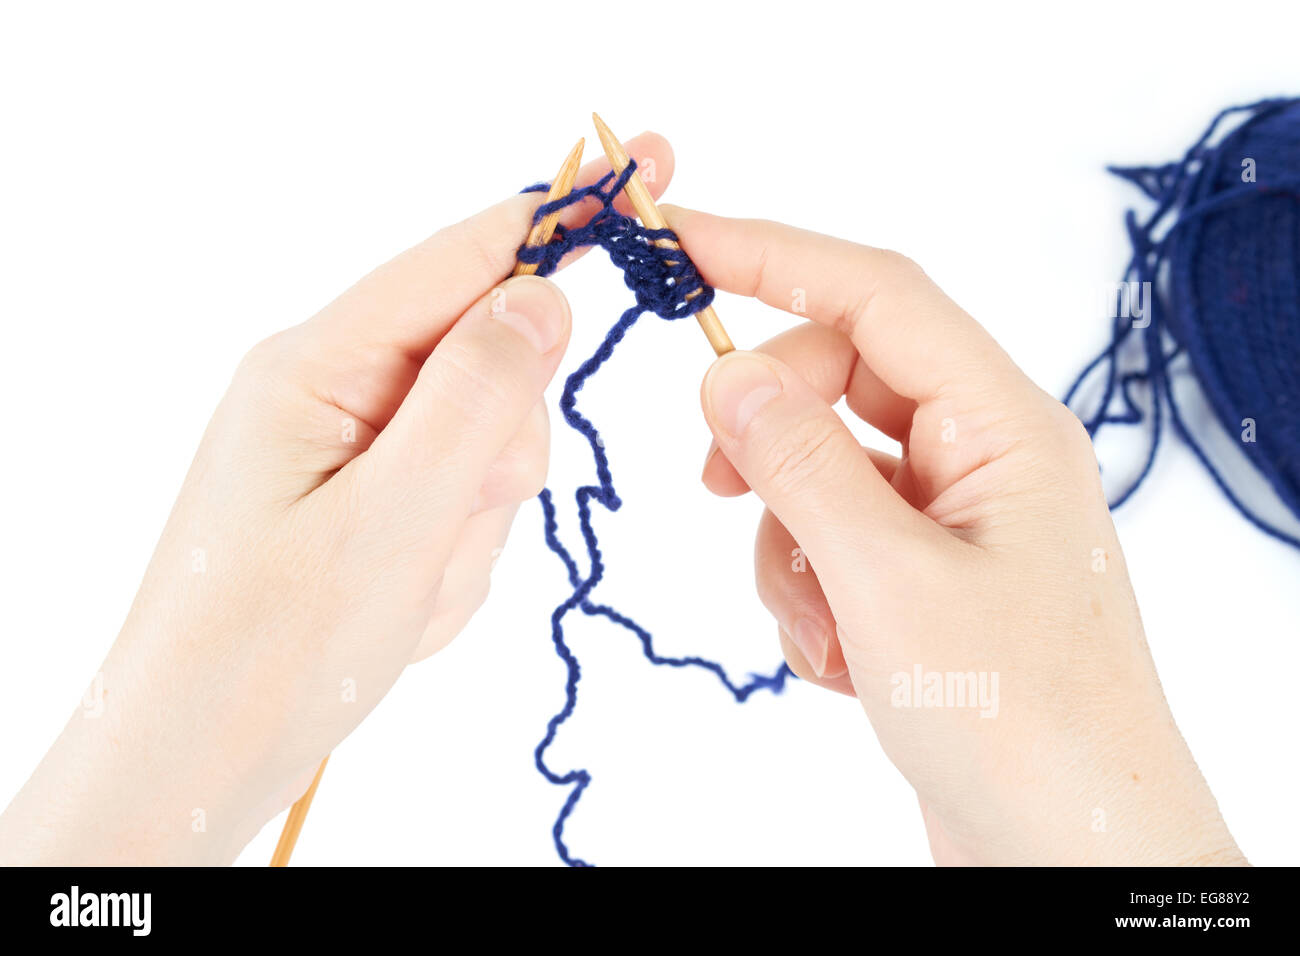 Le tricot commence. Paire de mains de la femme et des aiguilles à tricoter isolated on white Banque D'Images